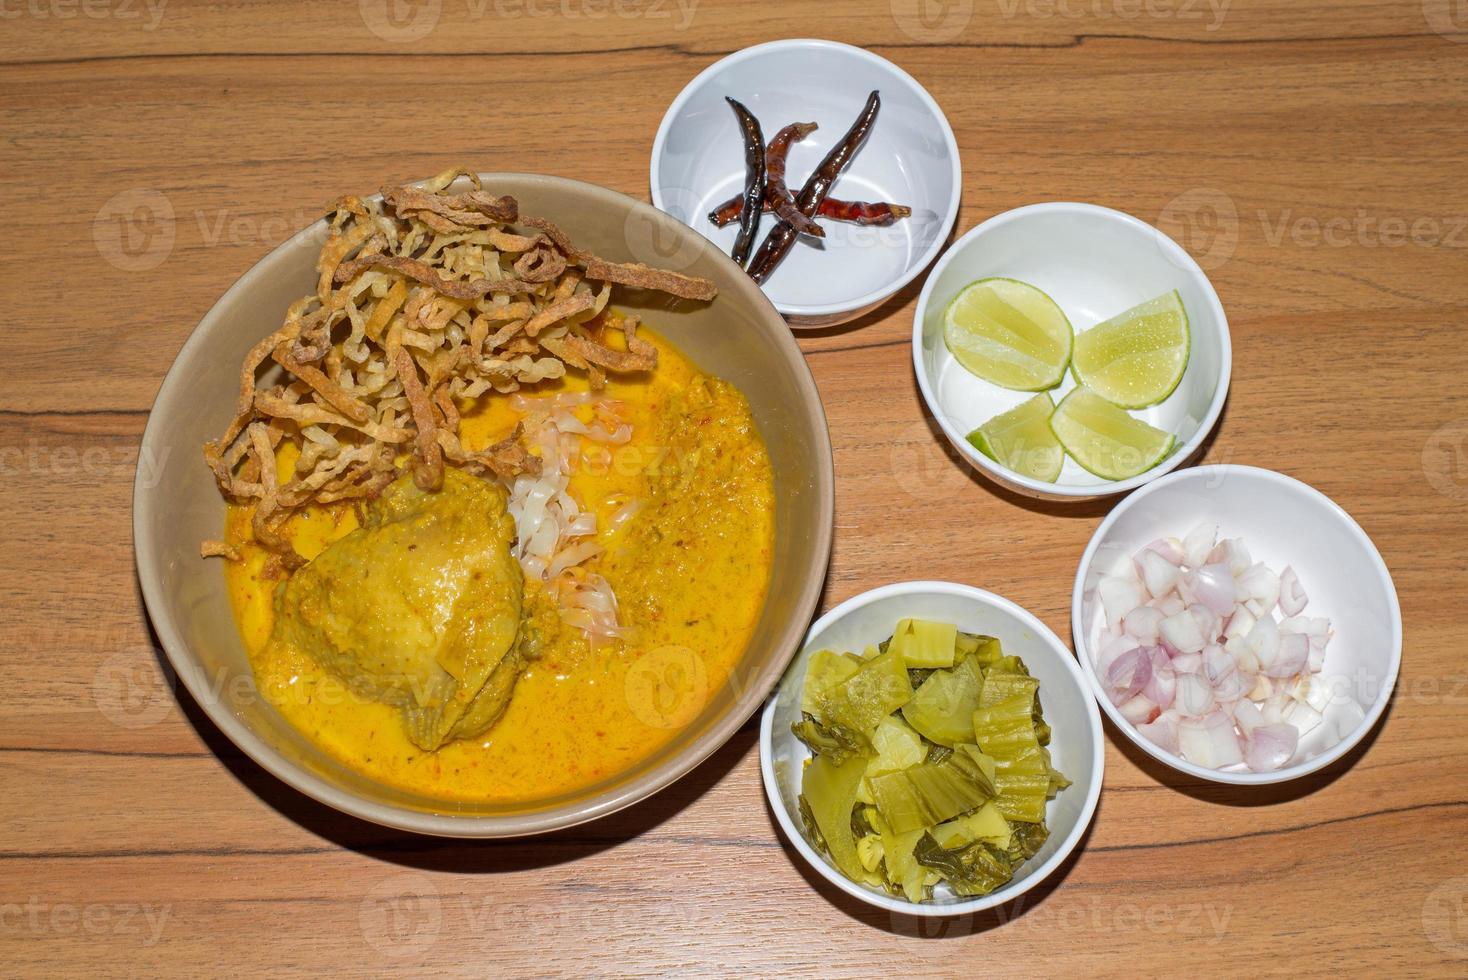 macarrão de ovo em curry de frango, comida tailandesa, kao soi kai foto